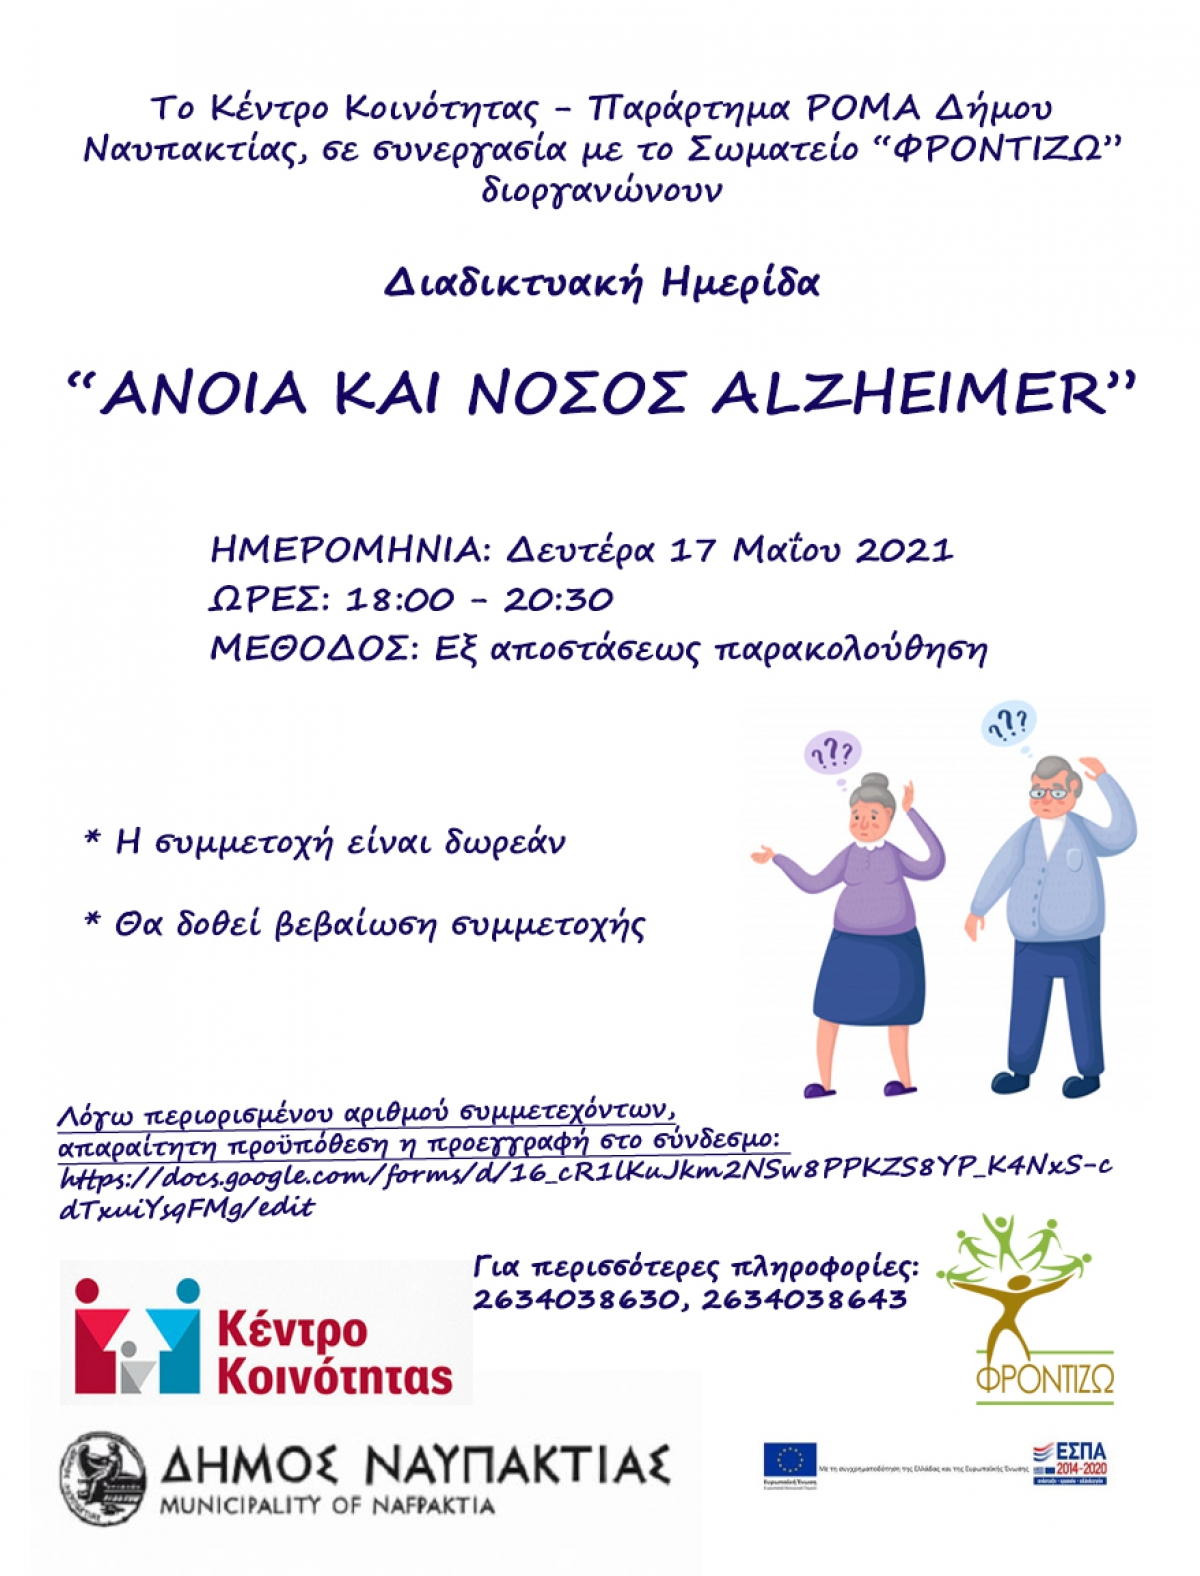 Διαδικτυακή Ημερίδα για την άνοια και τη νόσο Alzheimer  από το Κέντρο Κοινότητας του Δήμου Ναυπακτίας (Δευ 17/5/2021 18:00)